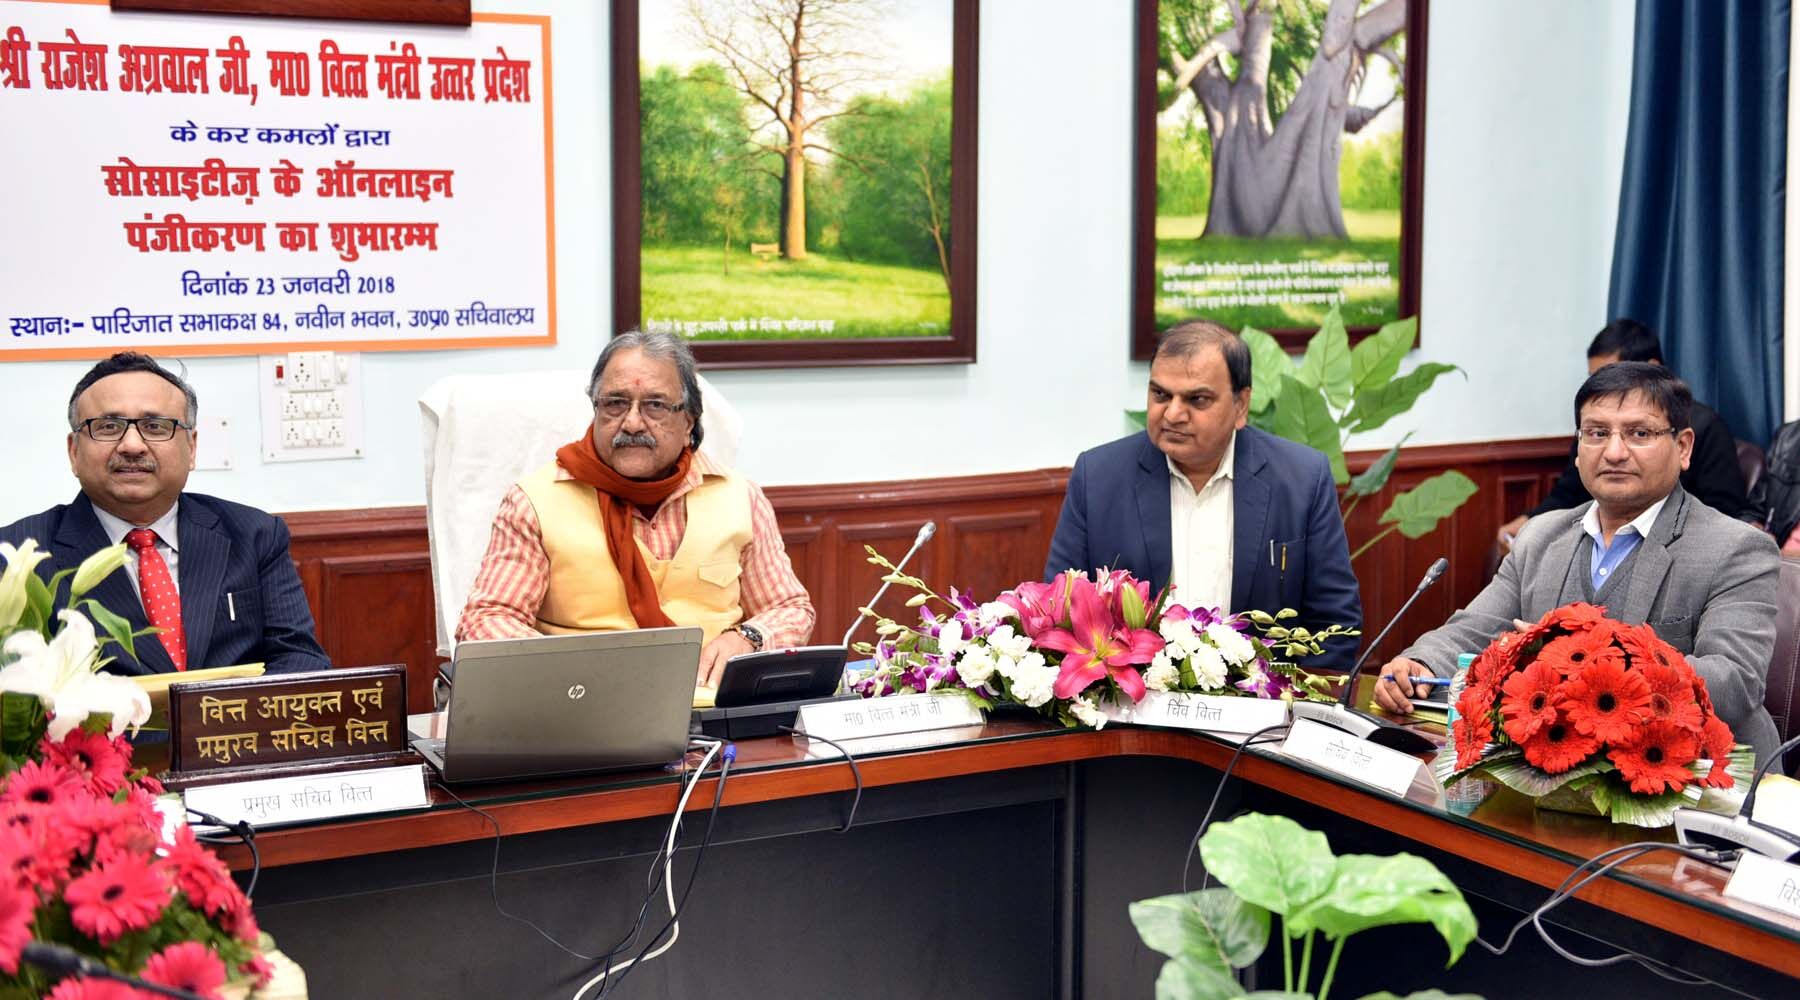 वित्त मंत्री राजेश अग्रवाल  ने फर्म एवं सोसाइटीज की आॅनलाइन पंजीकरण व्यवस्था का शुभारम्भ किया